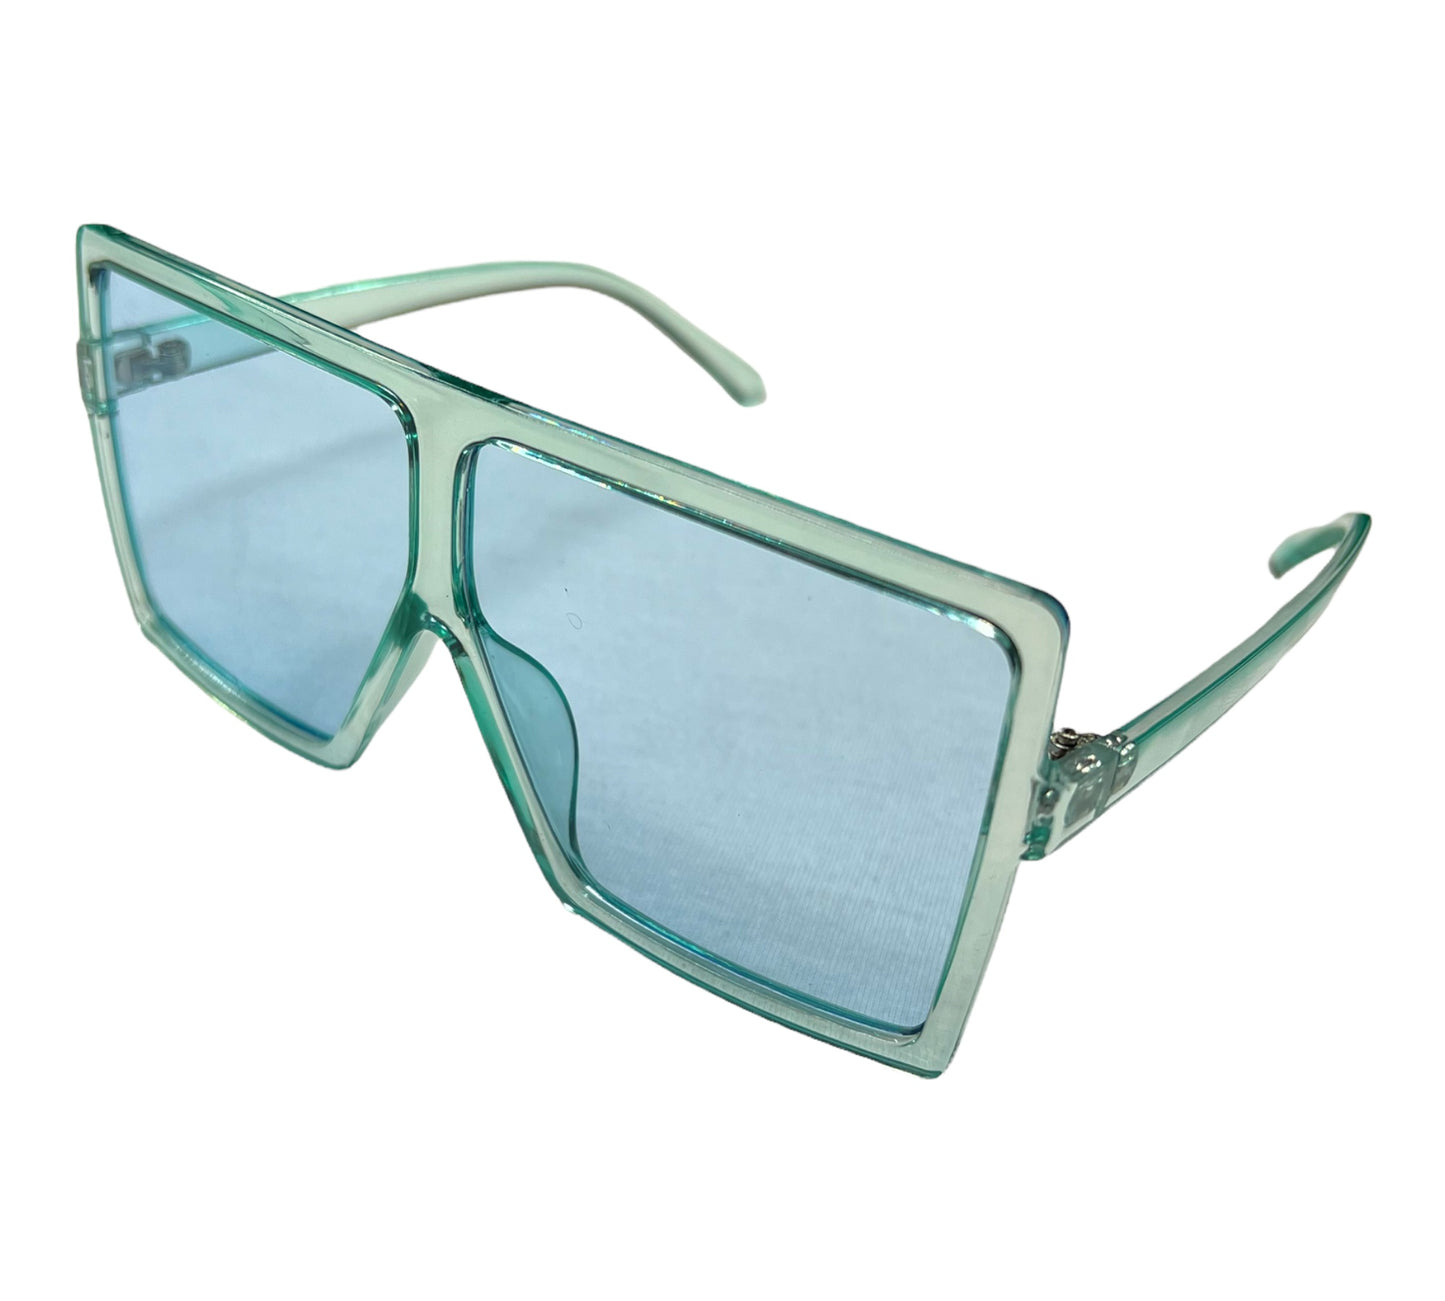 G-n-G Sun Glasses (multiple colors)